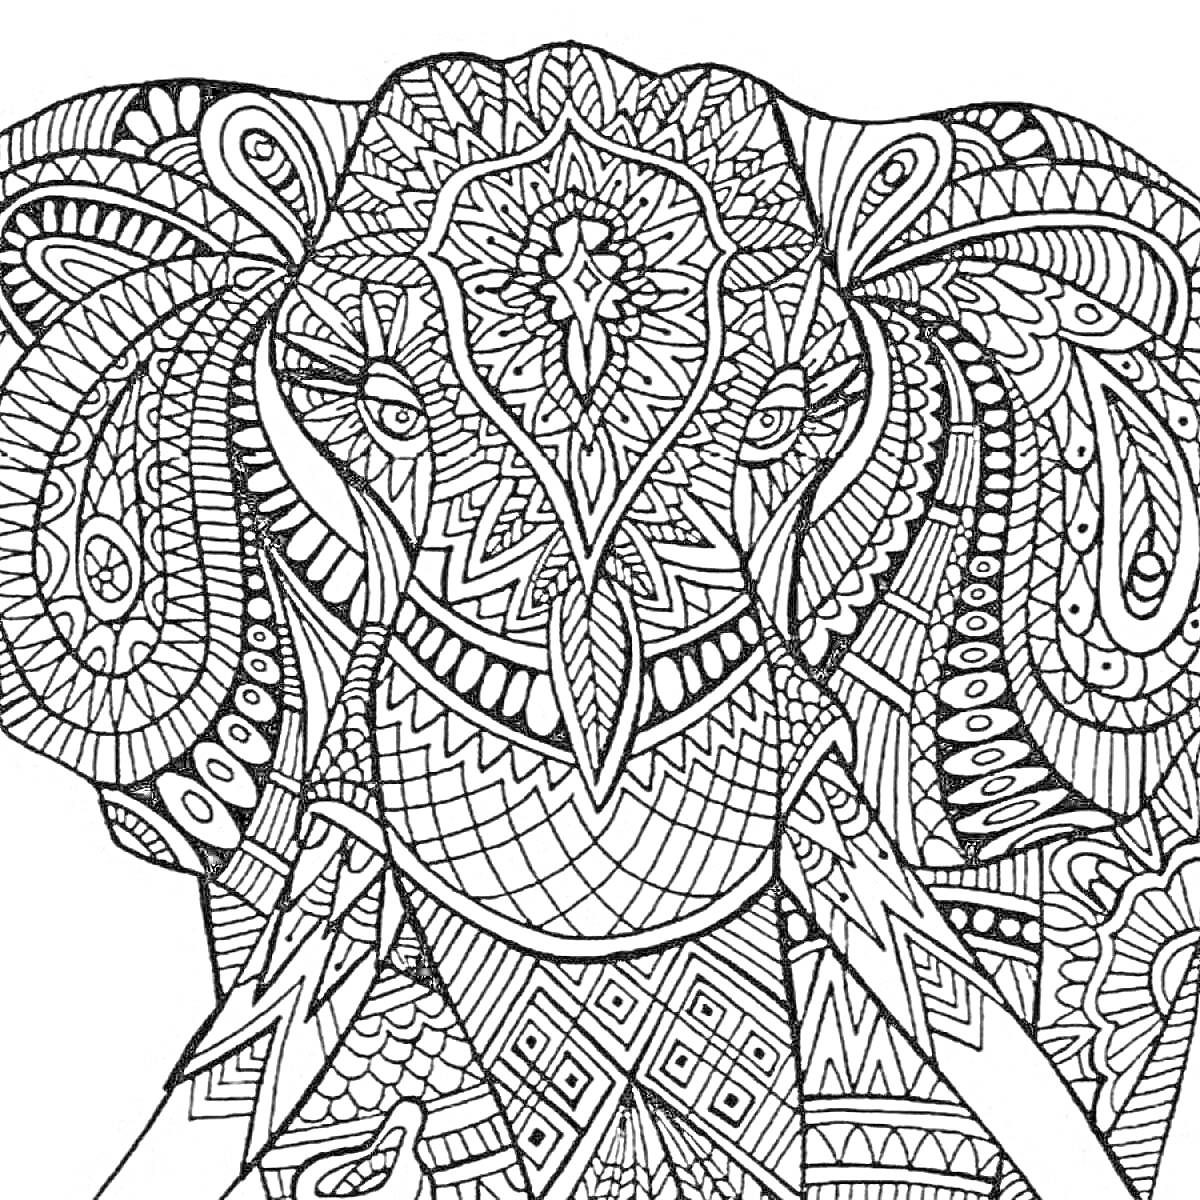 Раскраска Антистресс раскраска с изображением слона с замысловатыми узорами и геометрическими фигурами.